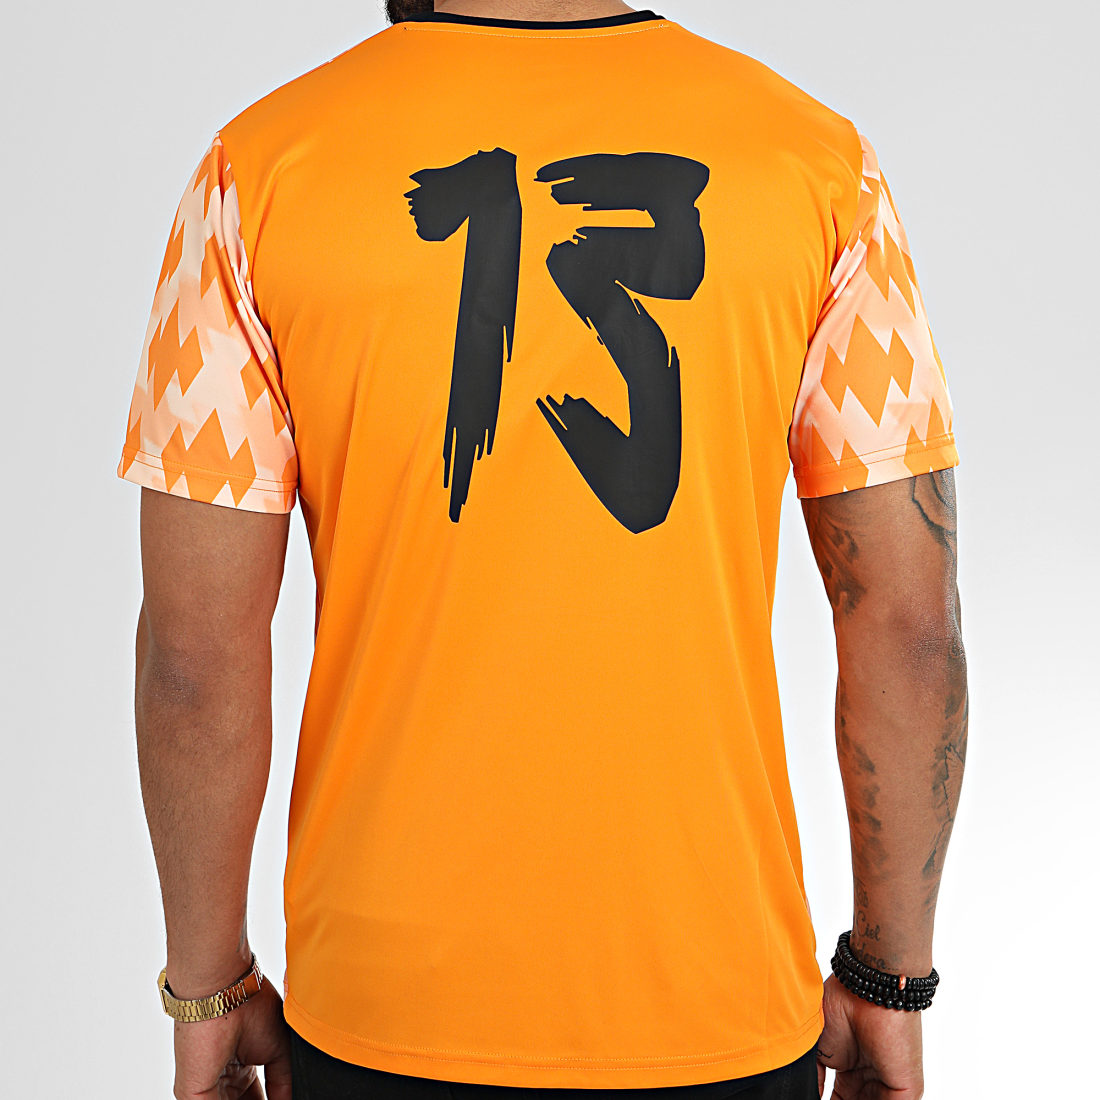 Tee shirt sport personnalise logo détourné Puma M L XL homme chat running